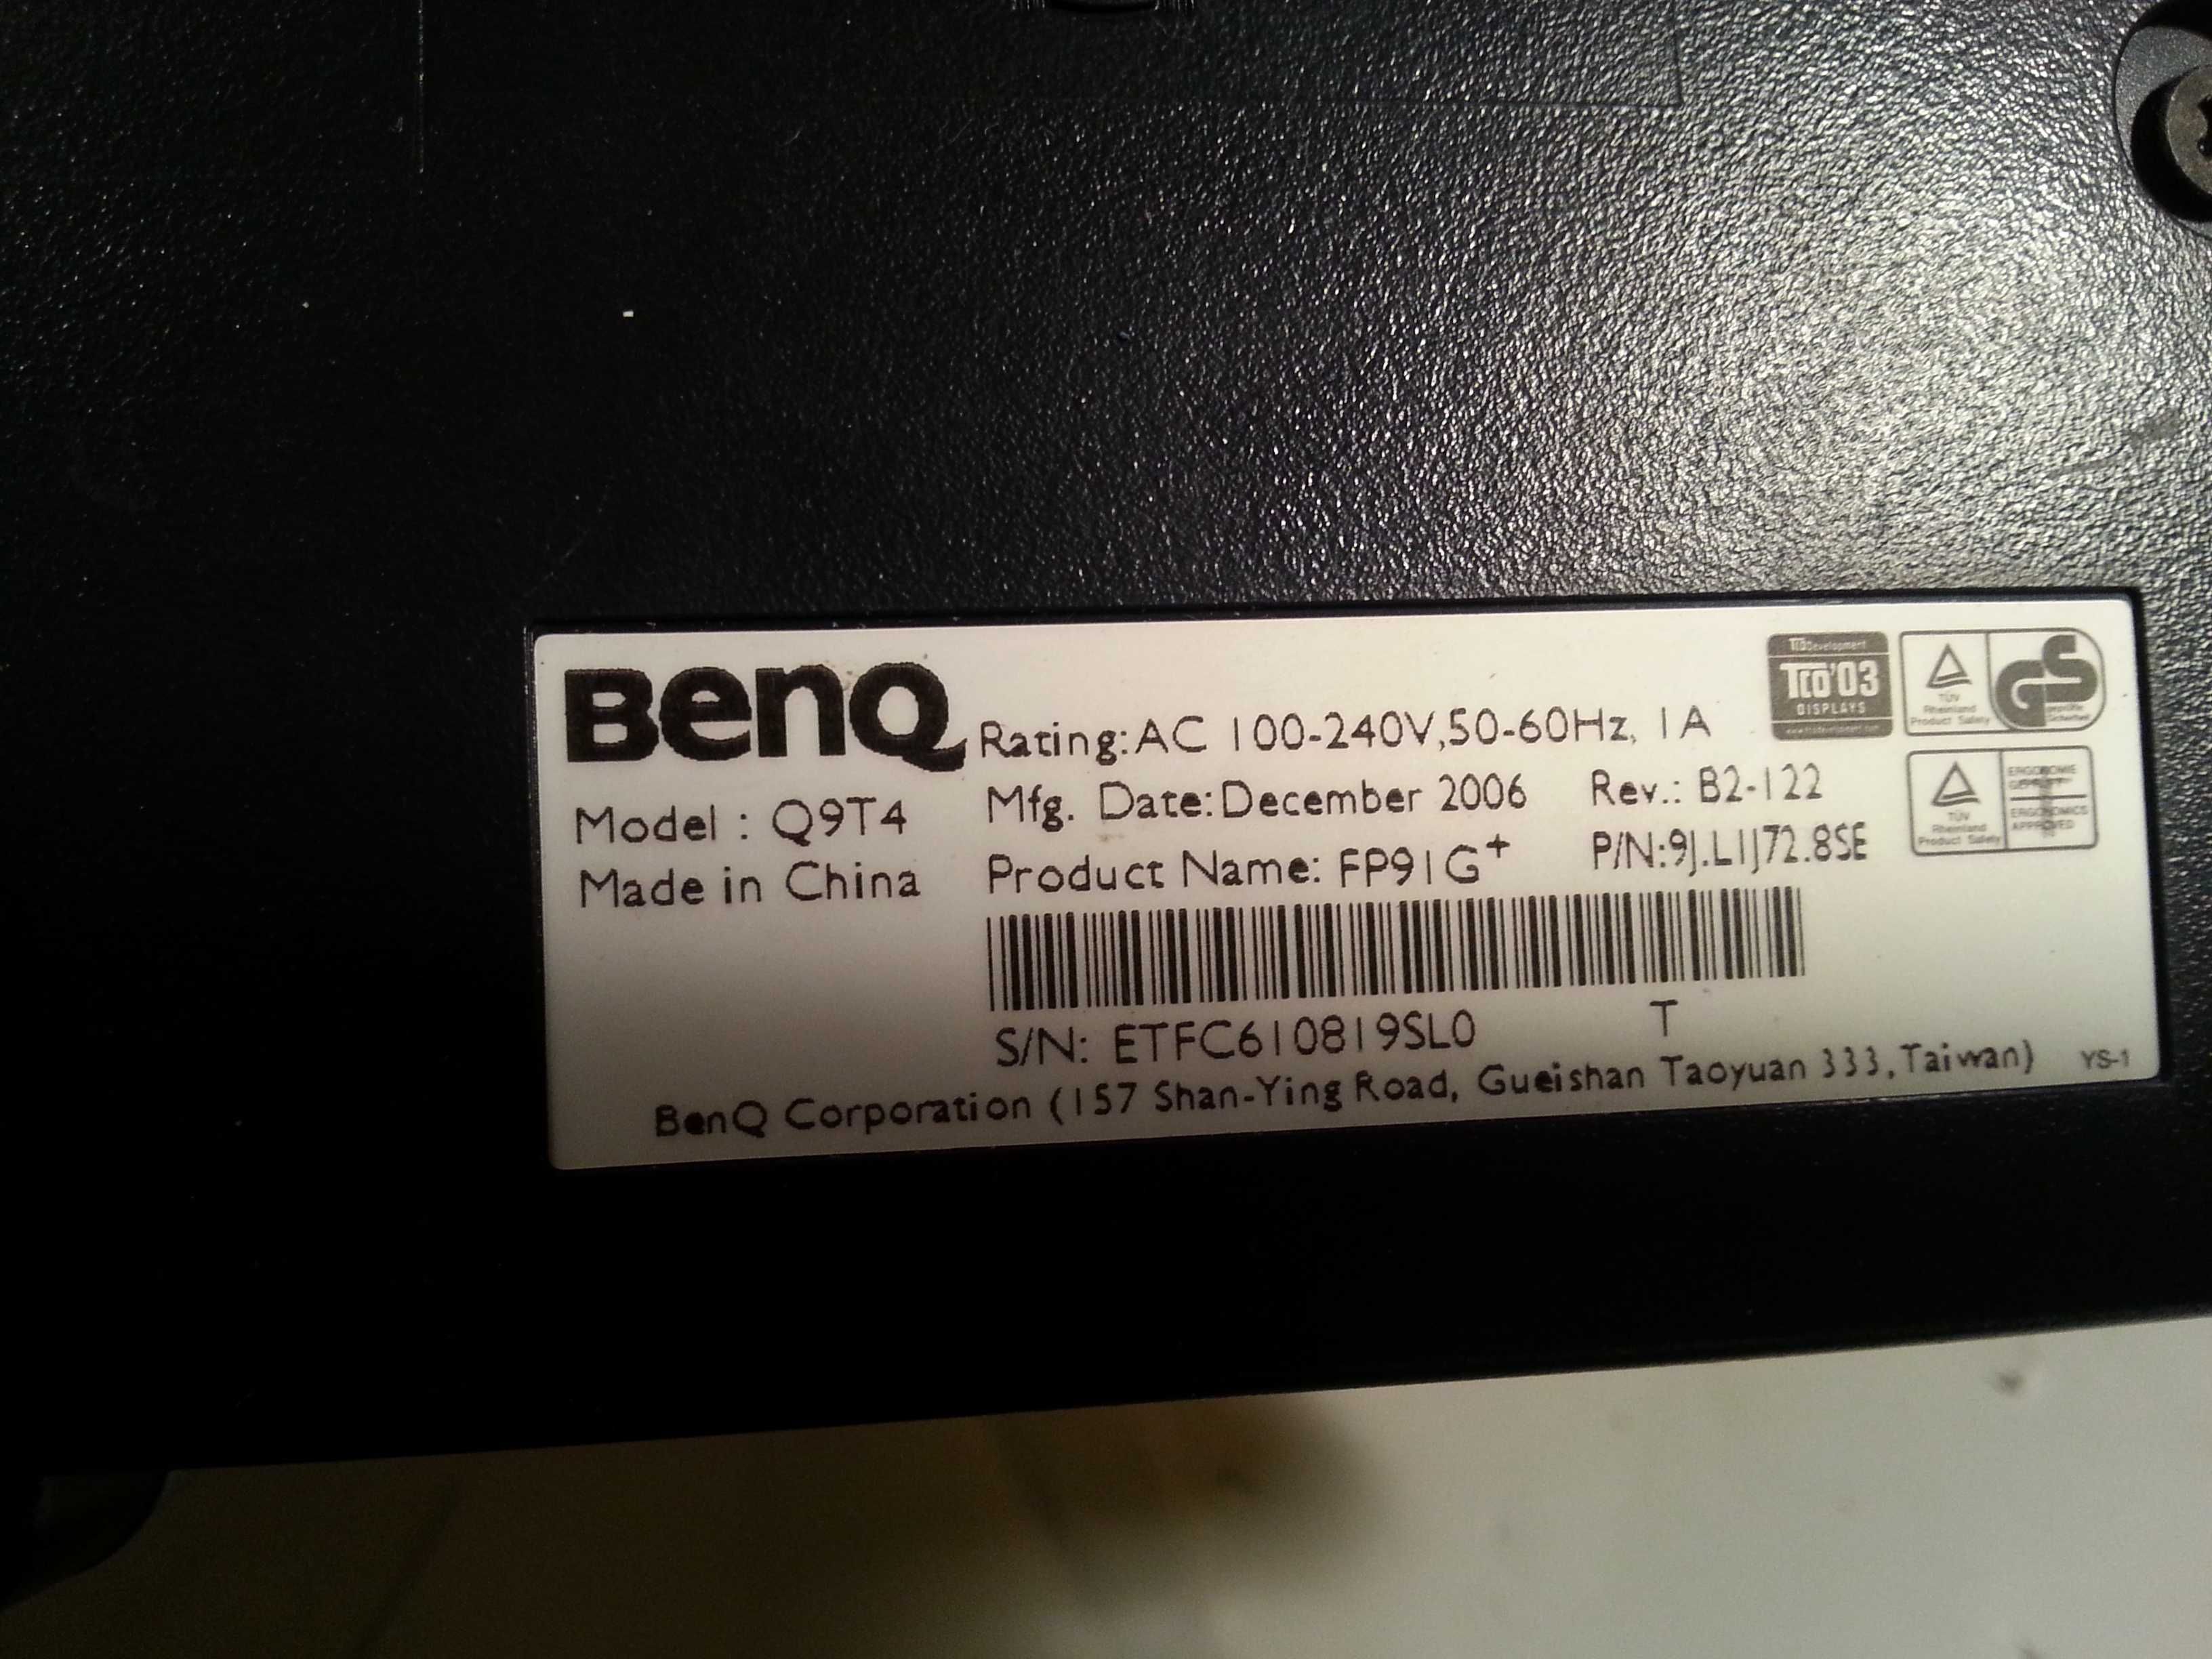 Монитор 19 инча-BenQ Q9T4 - LCD.